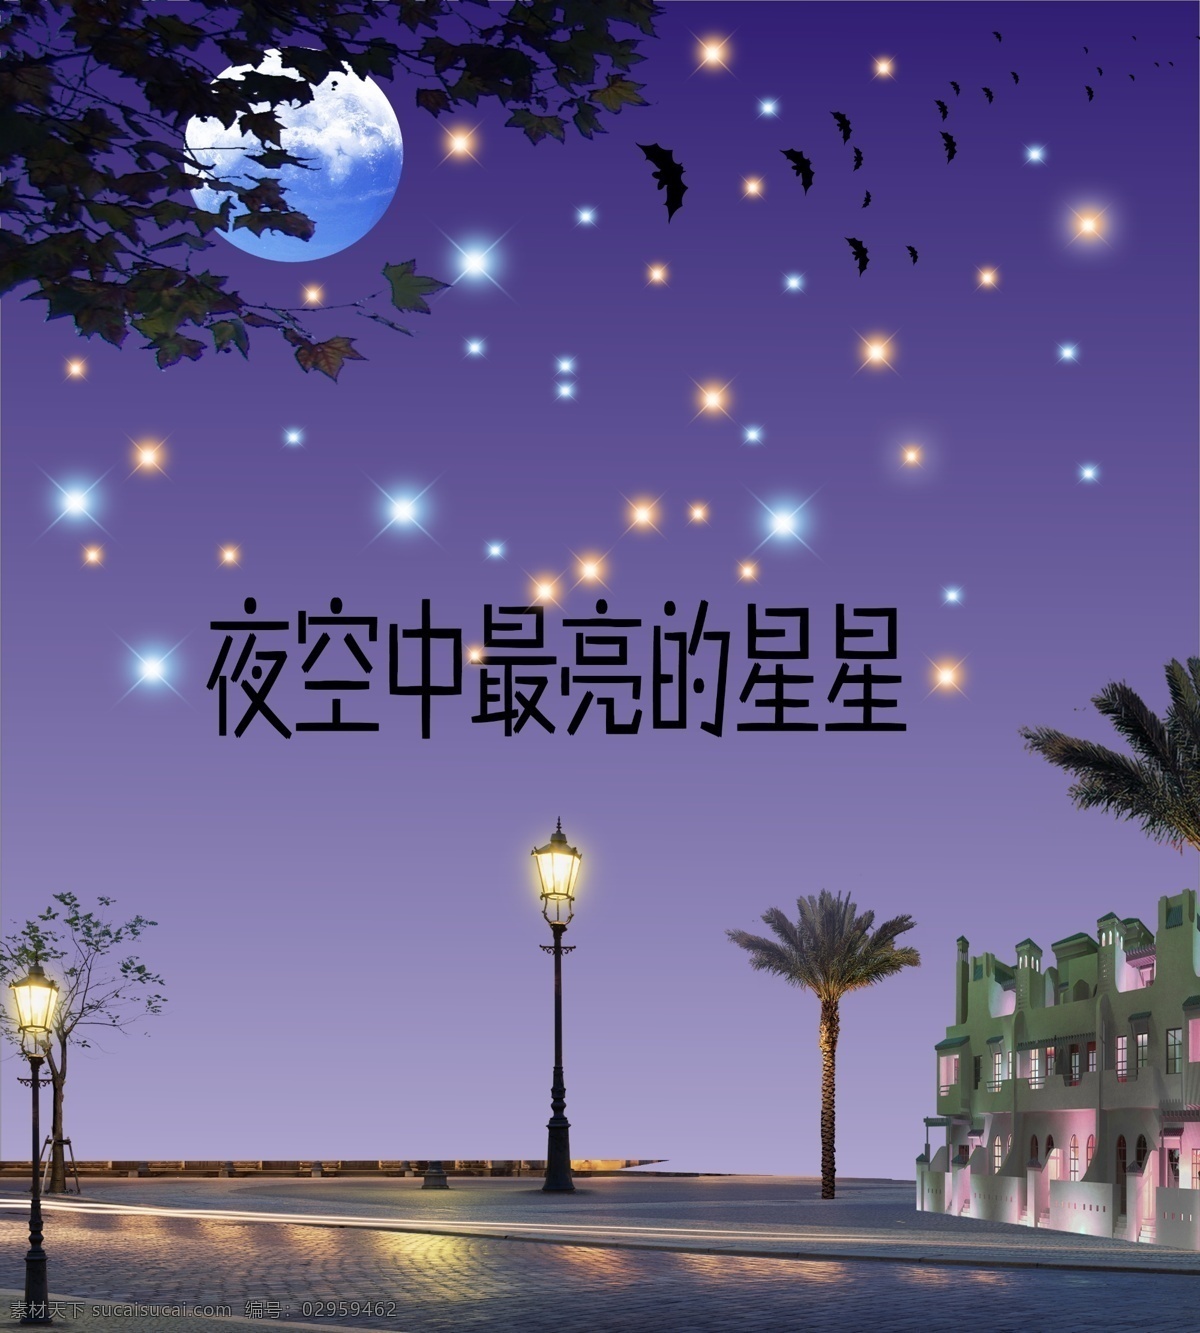 夜 夜空 背景 免费 星星 展架 海报 路灯 蝙蝠 月亮 树木 蓝色背景 房子 源文件 免费素材